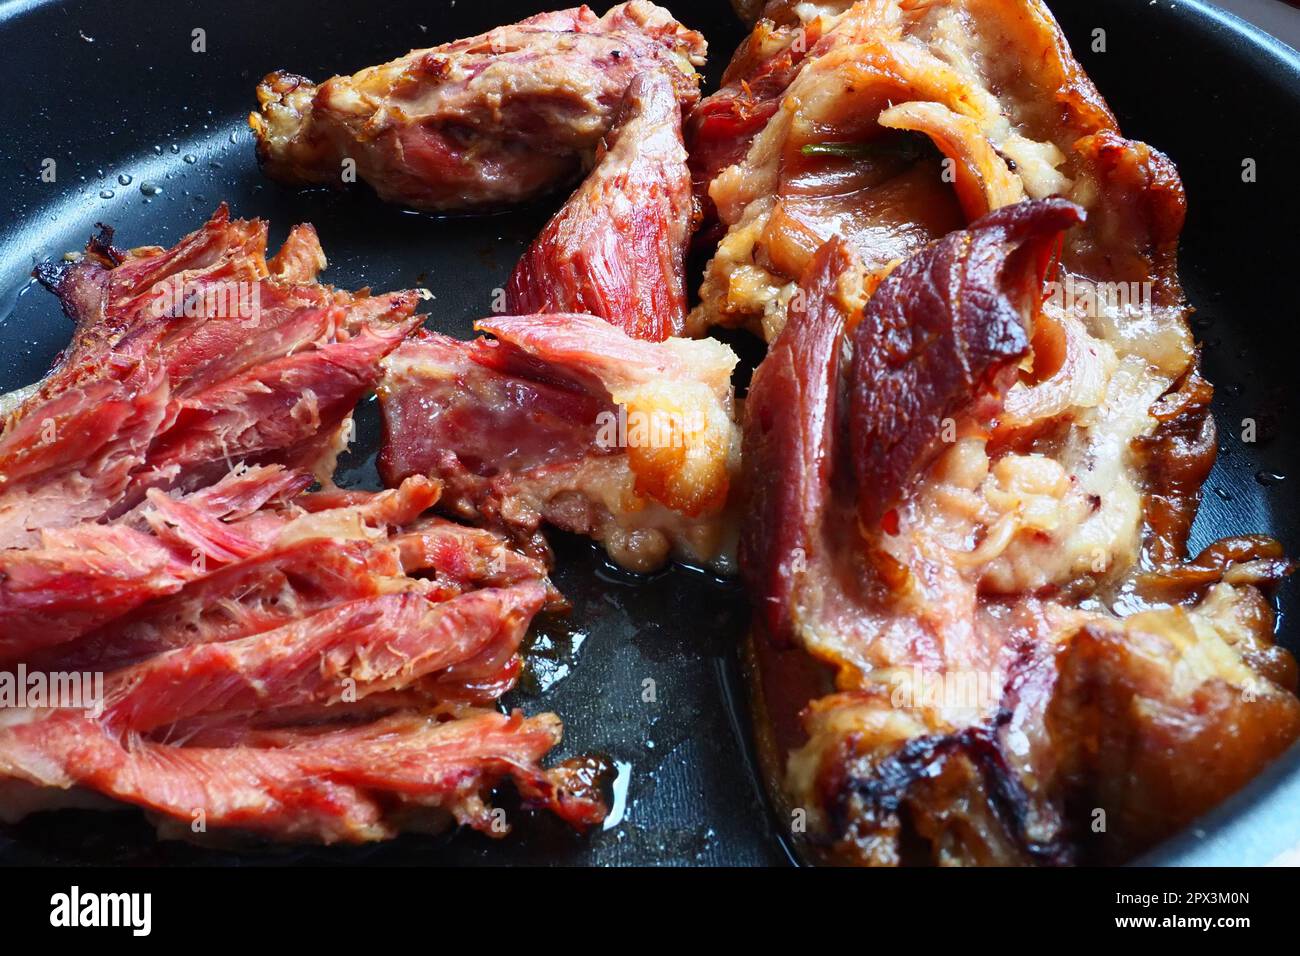 Épaule ou genou de porc fumé rôti. Délicieuse viande sur une plaque de cuisson noire avec des gouttes d'huile végétale, sortie du four. Spécialité de porc pour din Banque D'Images